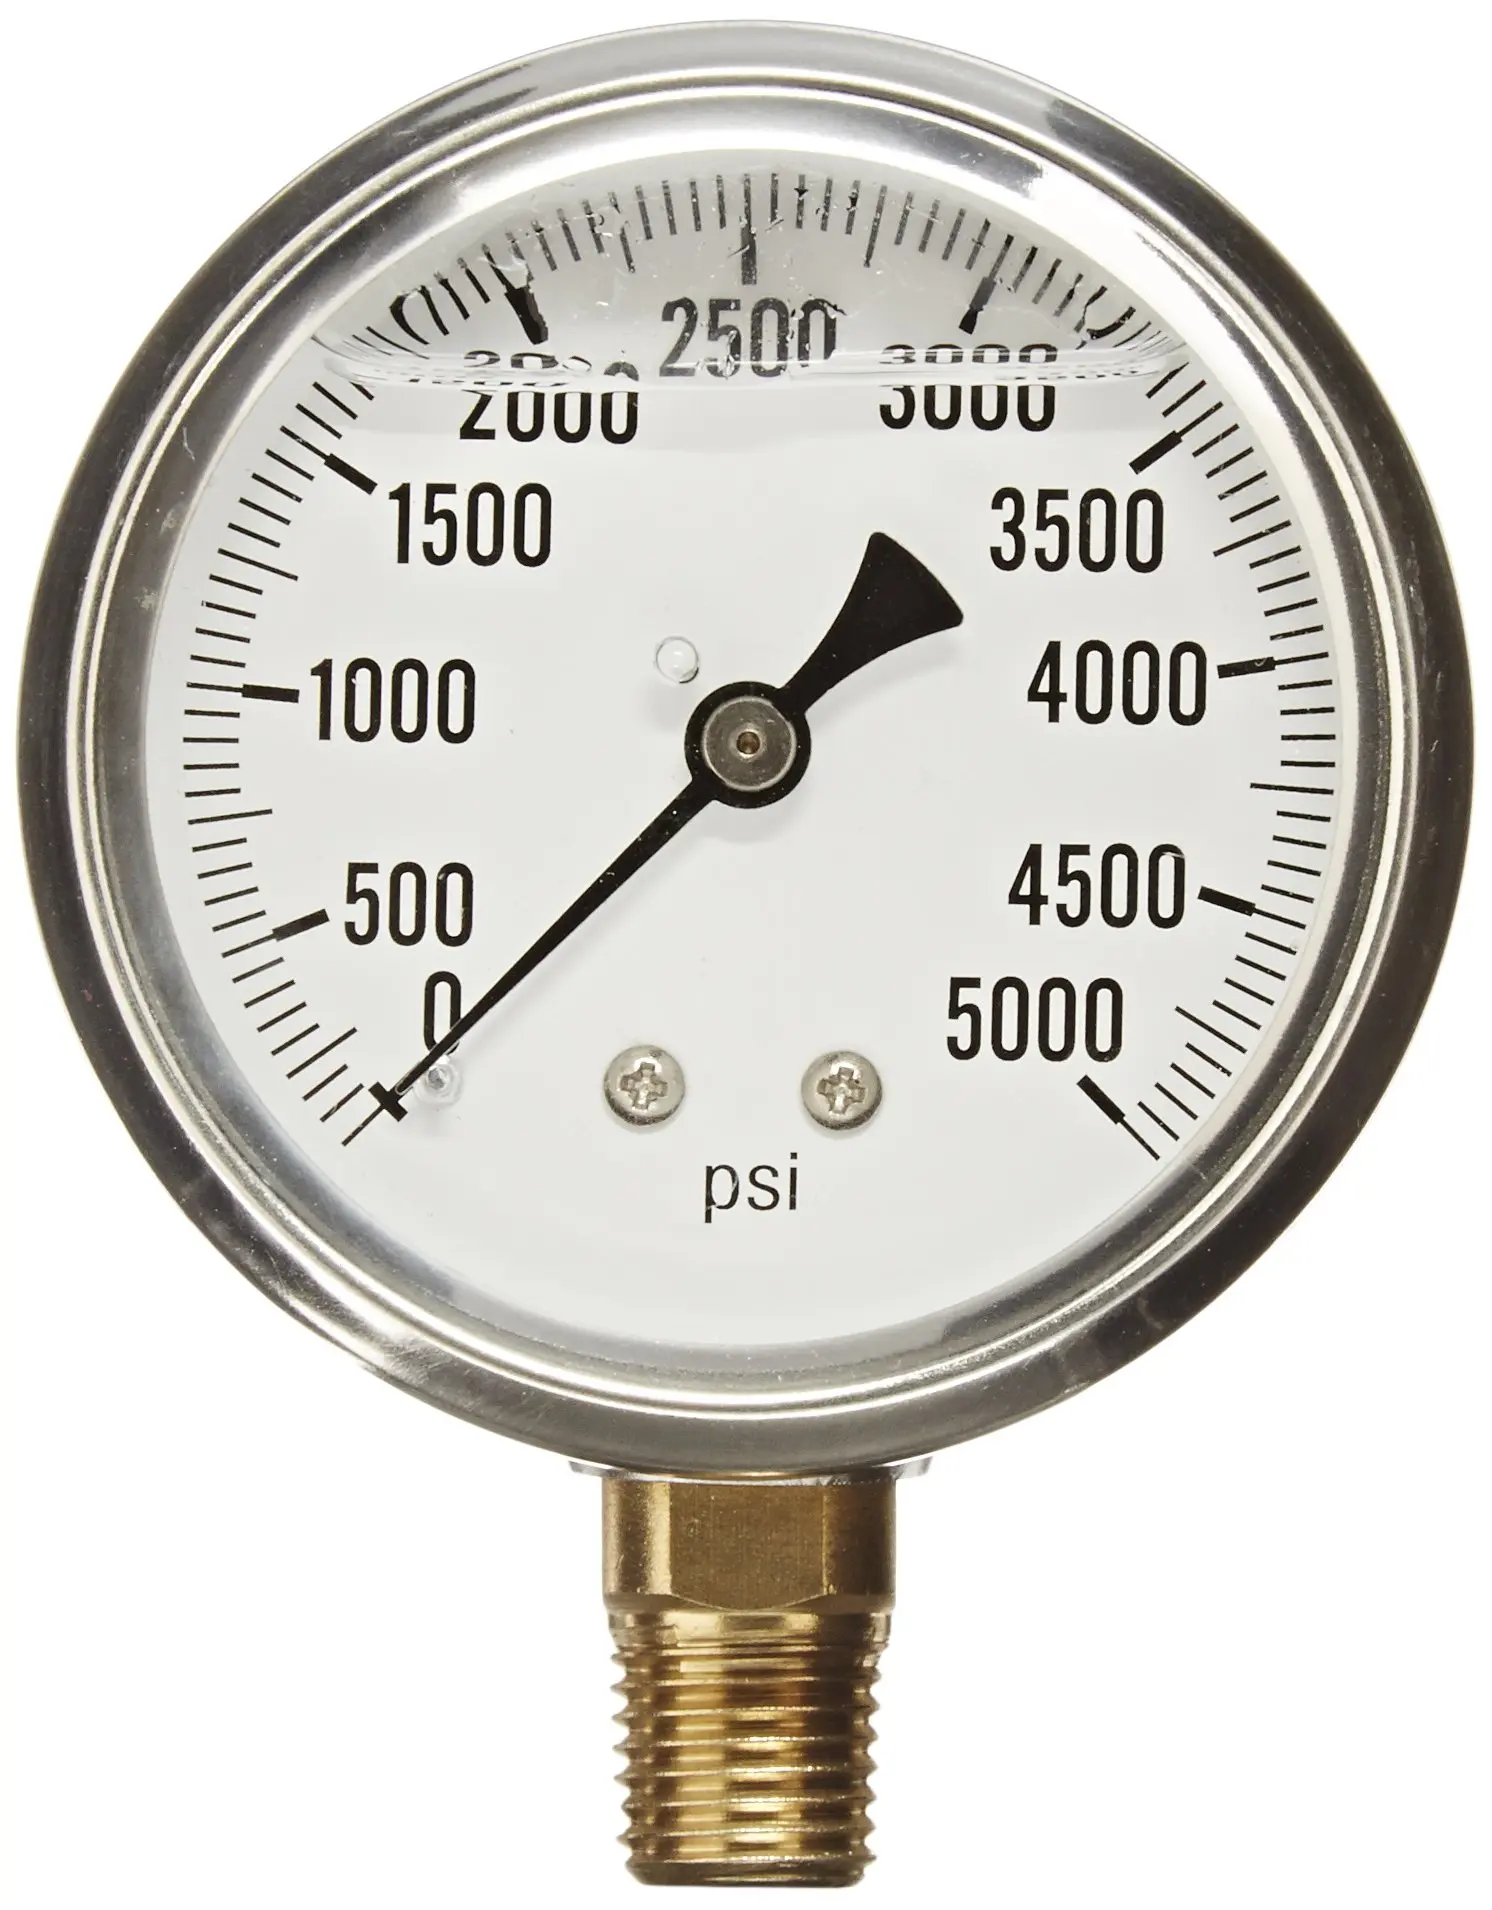 kkboyii Digital Flow Meter Water Flowmeter Temature Time Record with G1/2 Flow Sensor